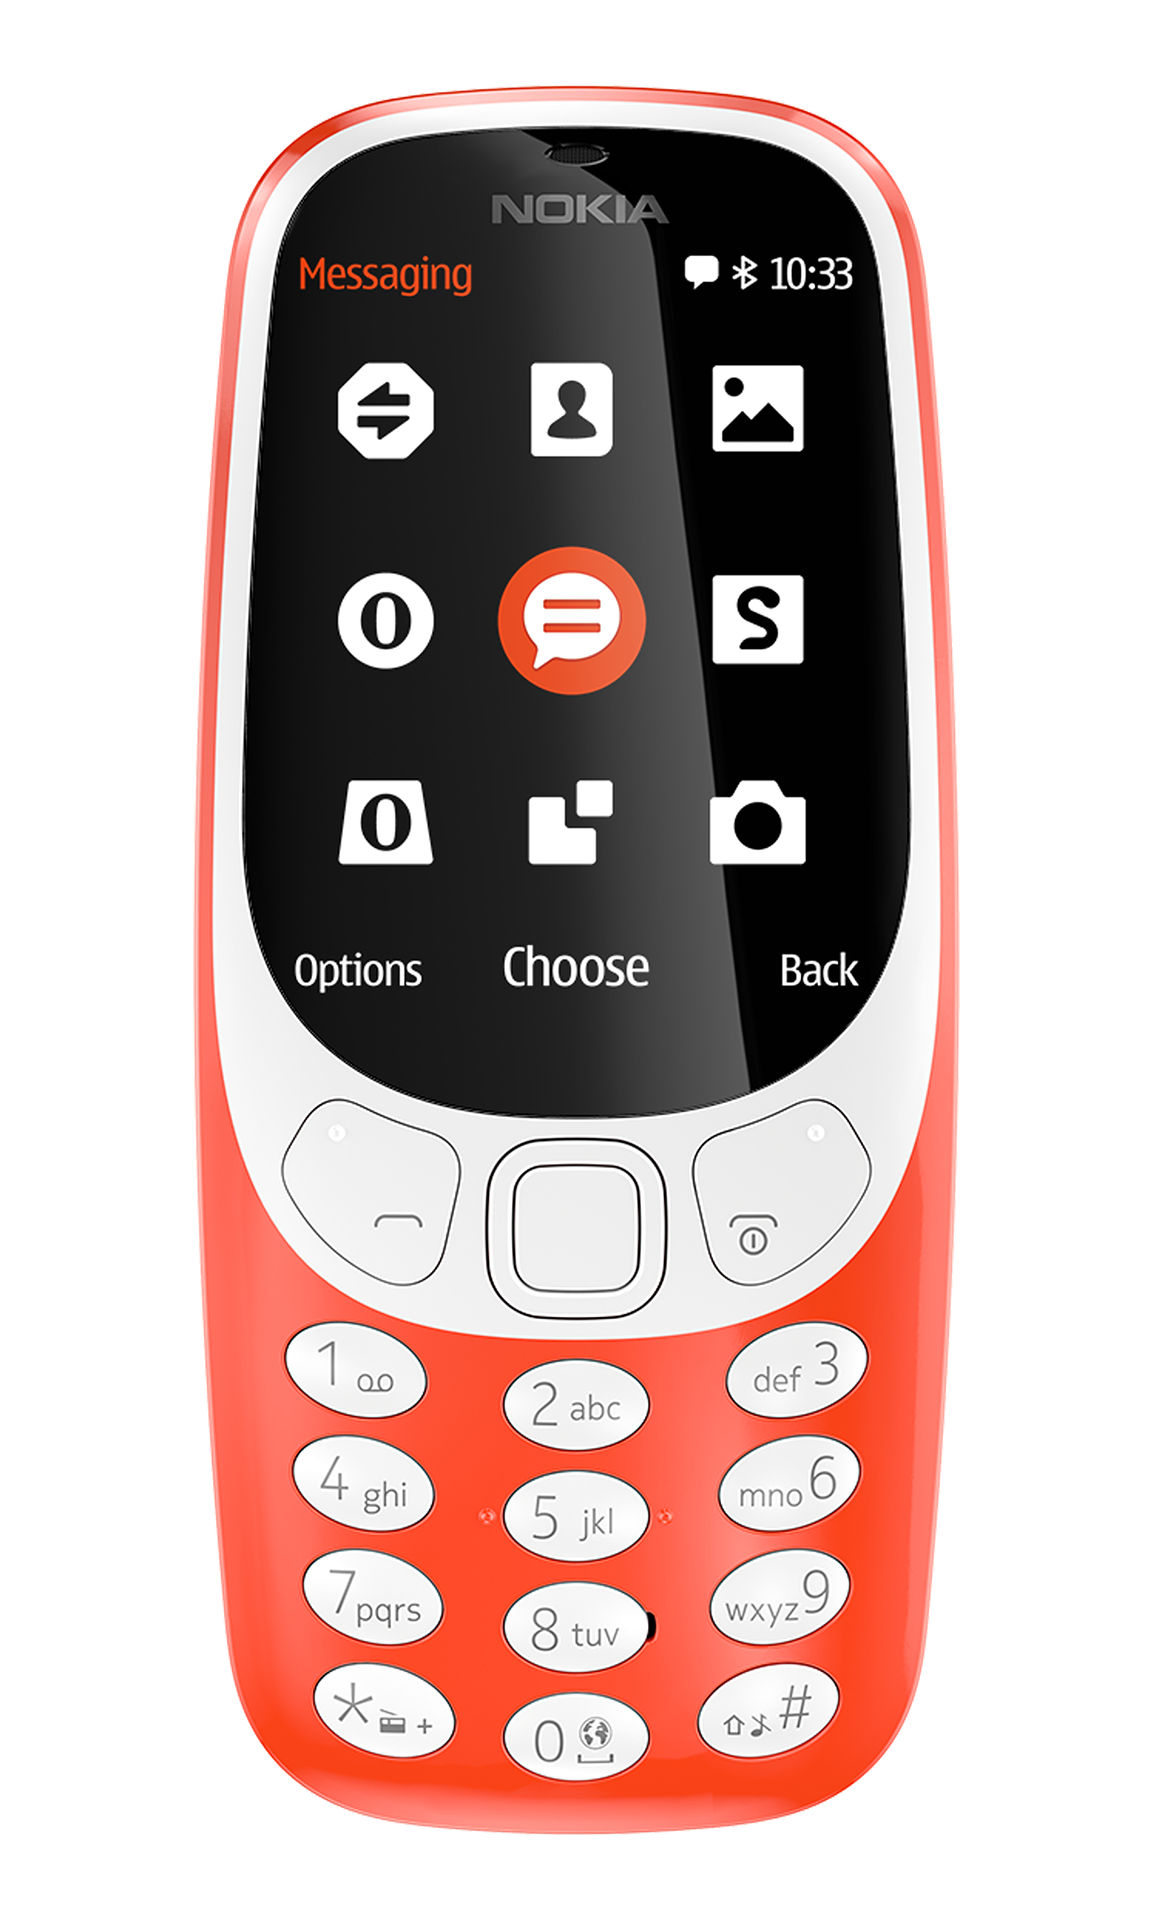 Nokia 3310 BASIC PHONE